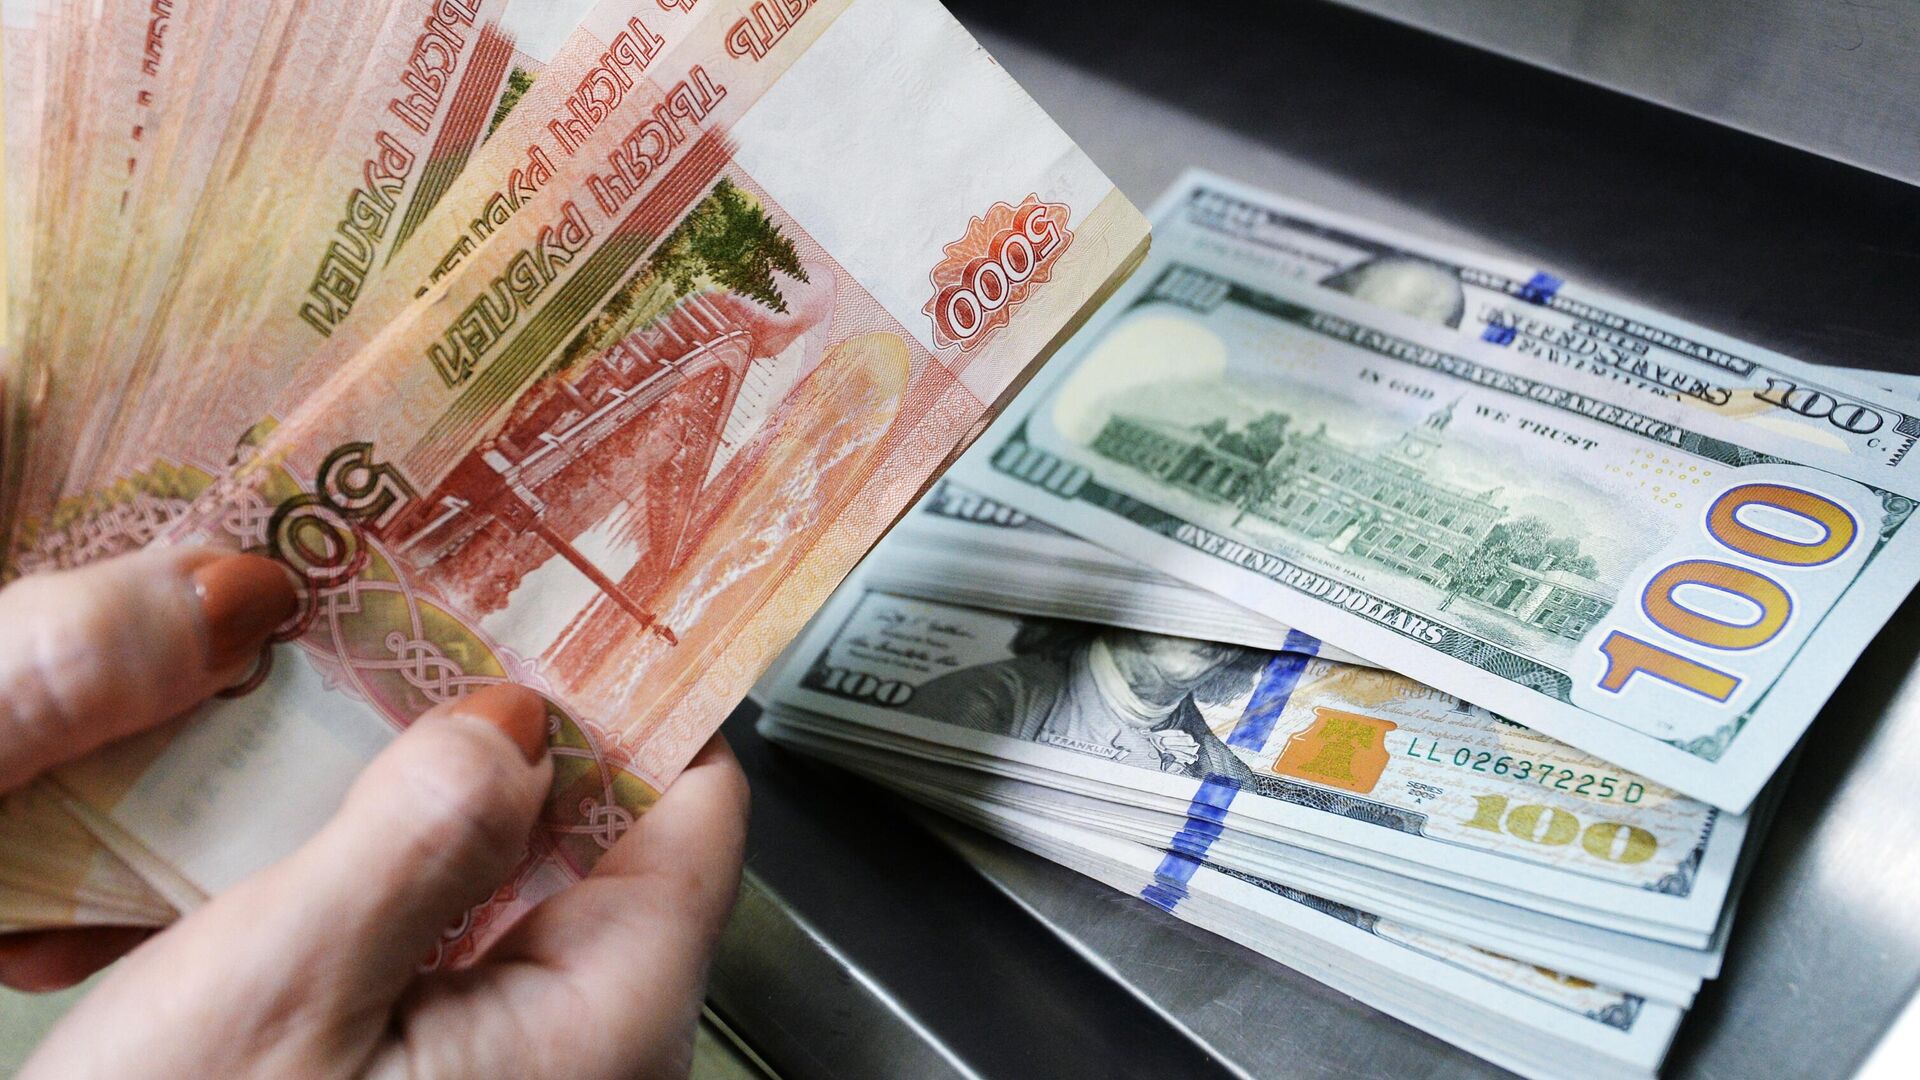 Рубль единственный из мировых валют укрепился к доллару, сообщил эксперт